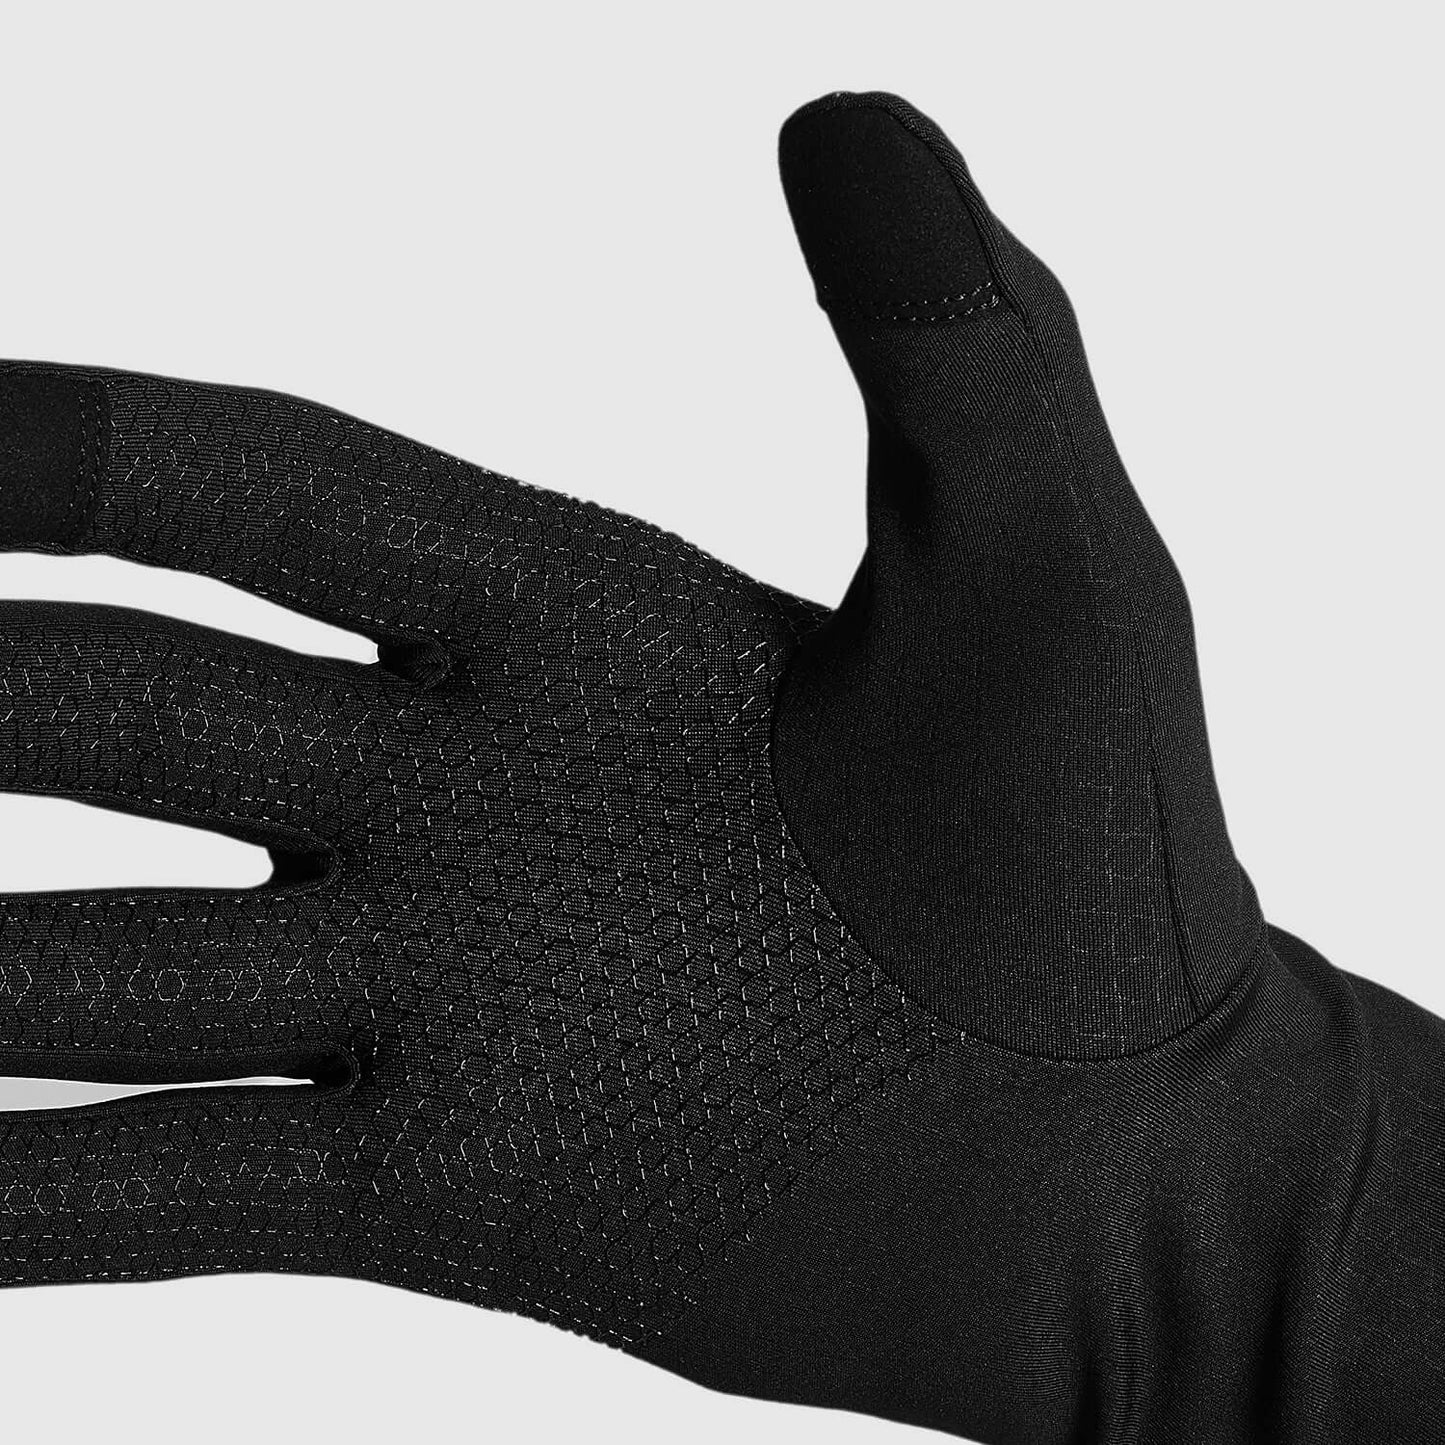 ランニンググローブ XMAGL05c901 Pace Gloves - Black [ユニセックス]